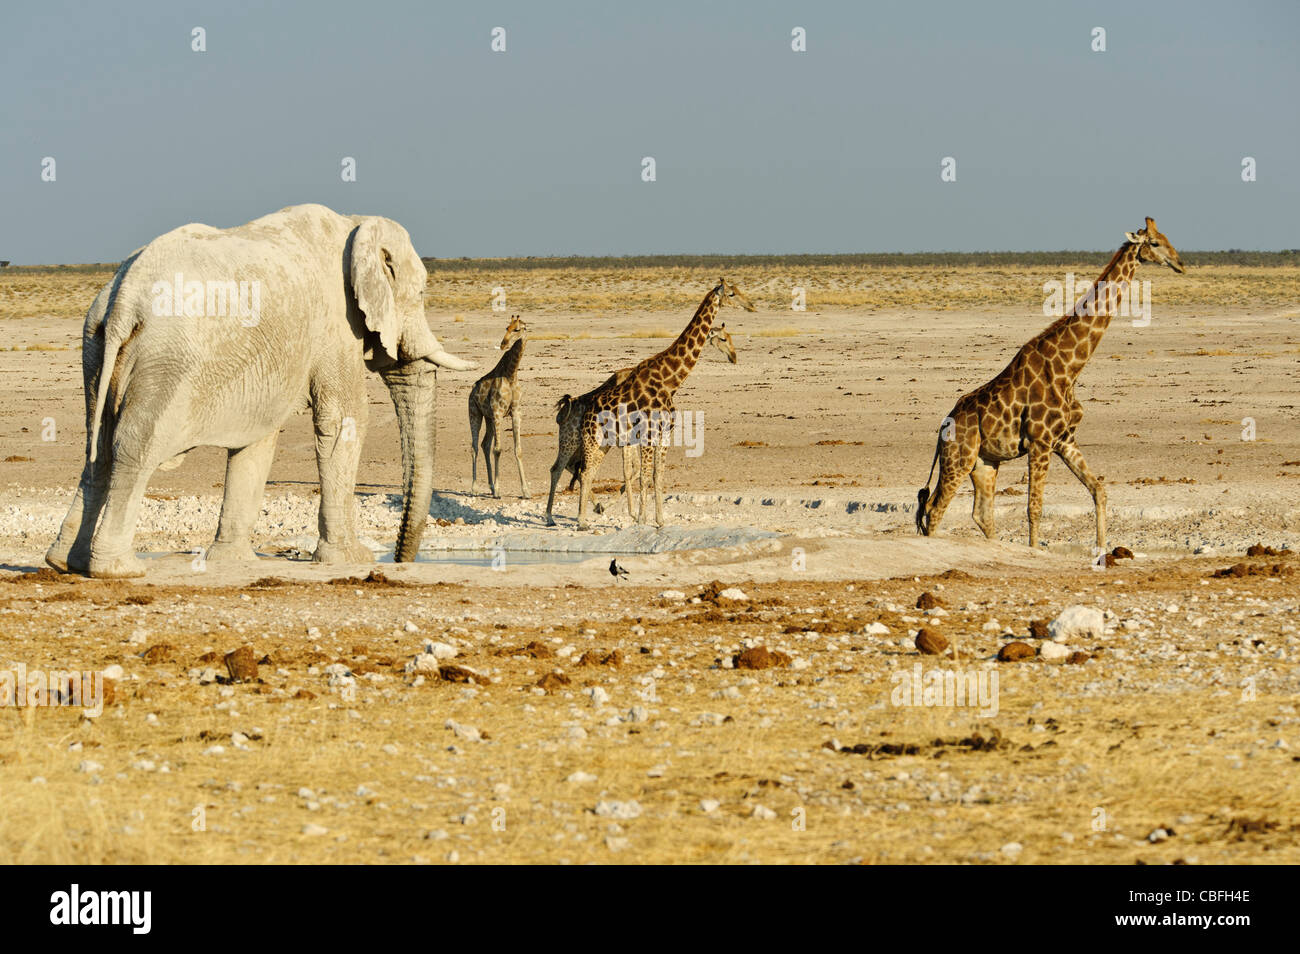 Elephant and giraffes at  'Elephant Bath' water hole. Etosha National Park, Namibia. Stock Photo